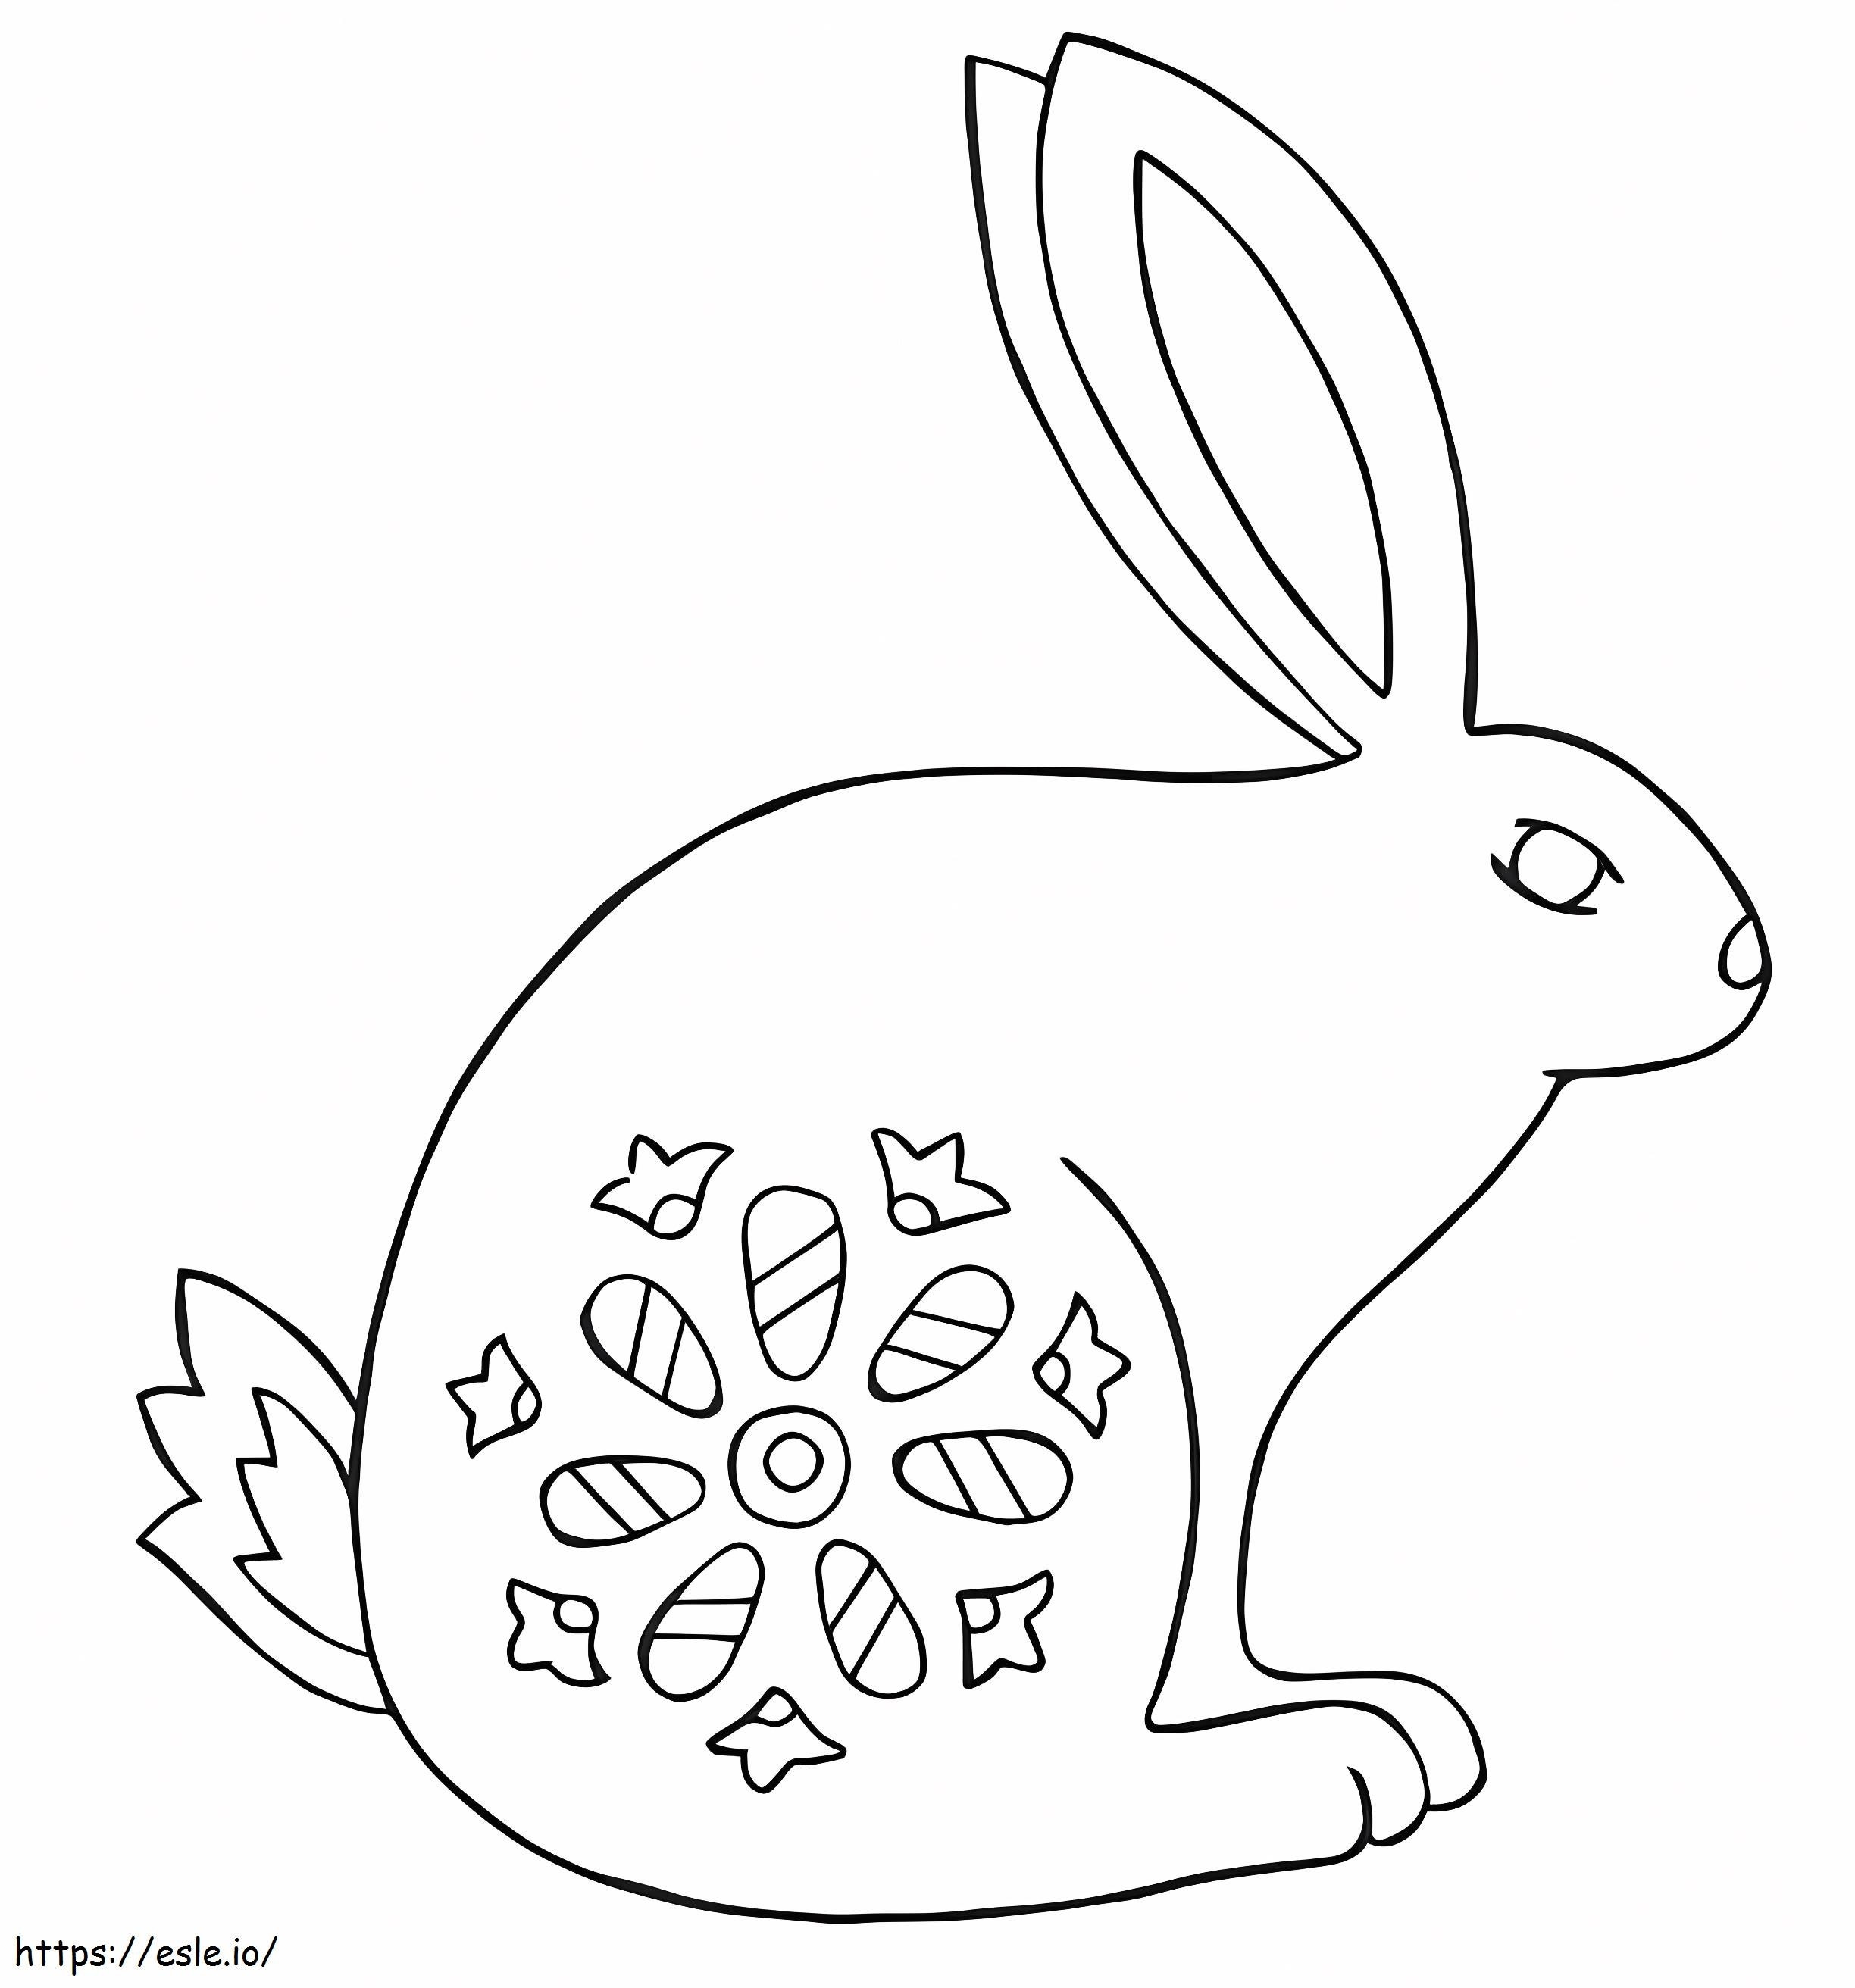 Rabbit Alebrijes coloring page